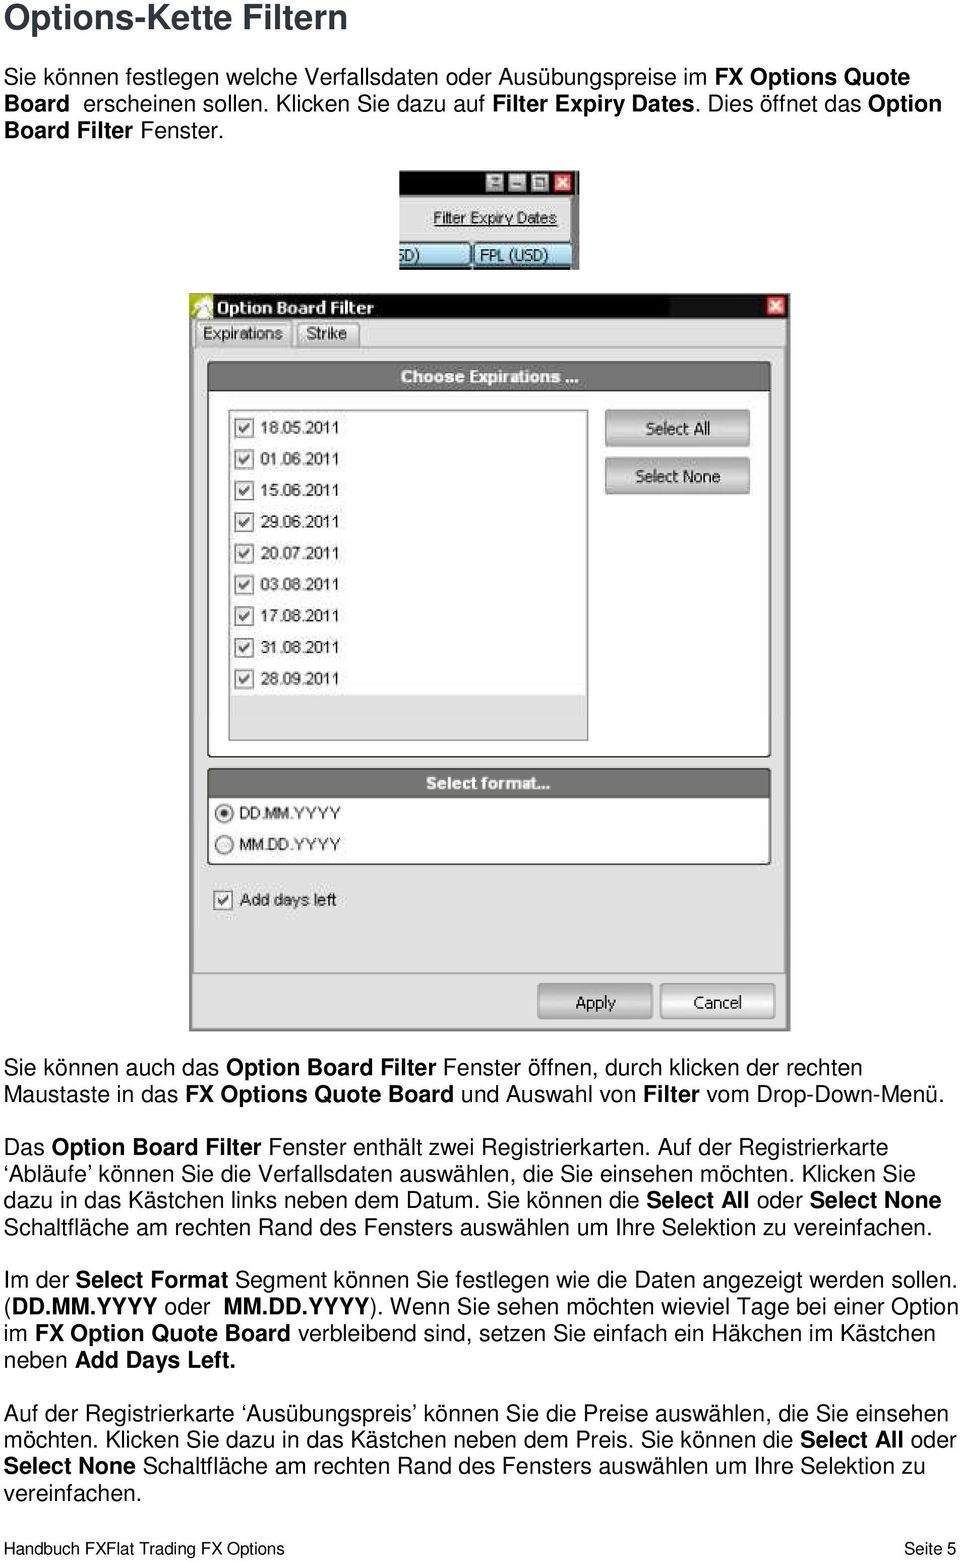 Sie können auch das Option Board Filter Fenster öffnen, durch klicken der rechten Maustaste in das FX Options Quote Board und Auswahl von Filter vom Drop-Down-Menü.